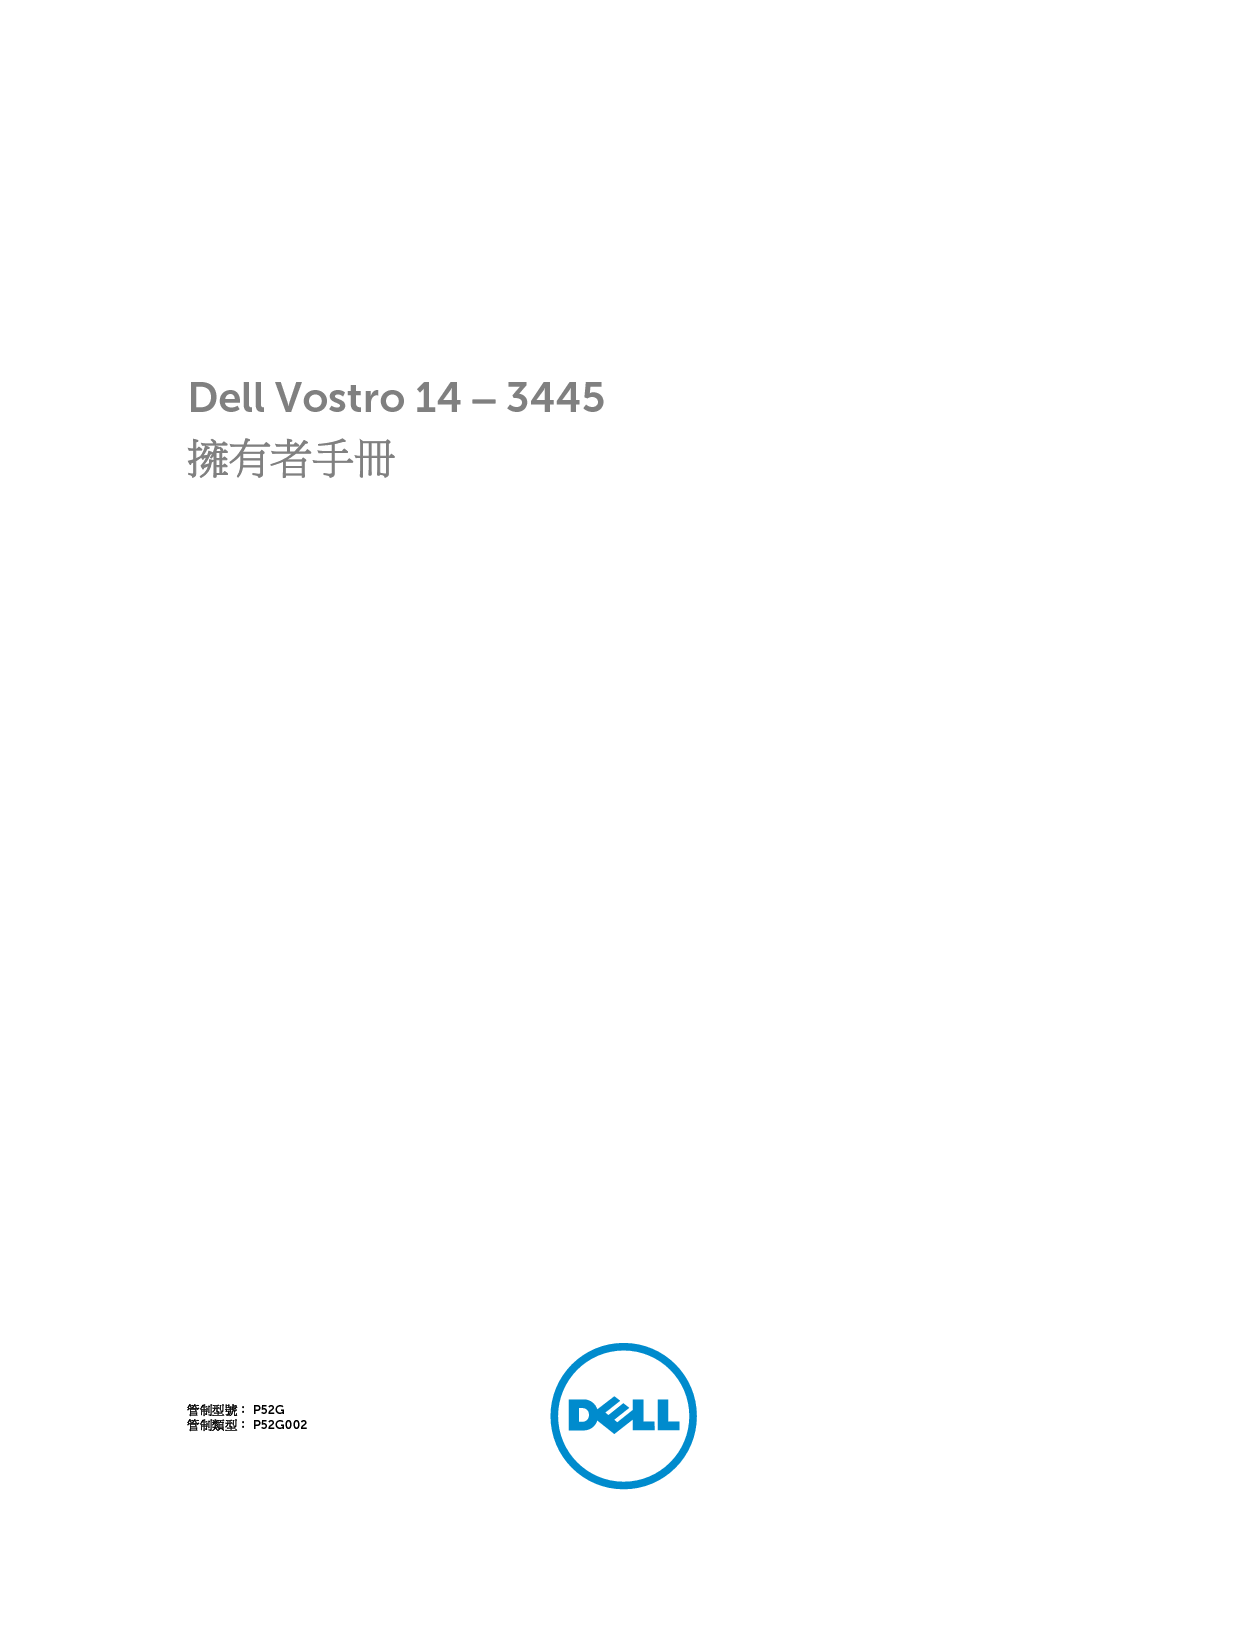 戴尔 Dell Vostro 14-3445 繁体 用户手册 封面